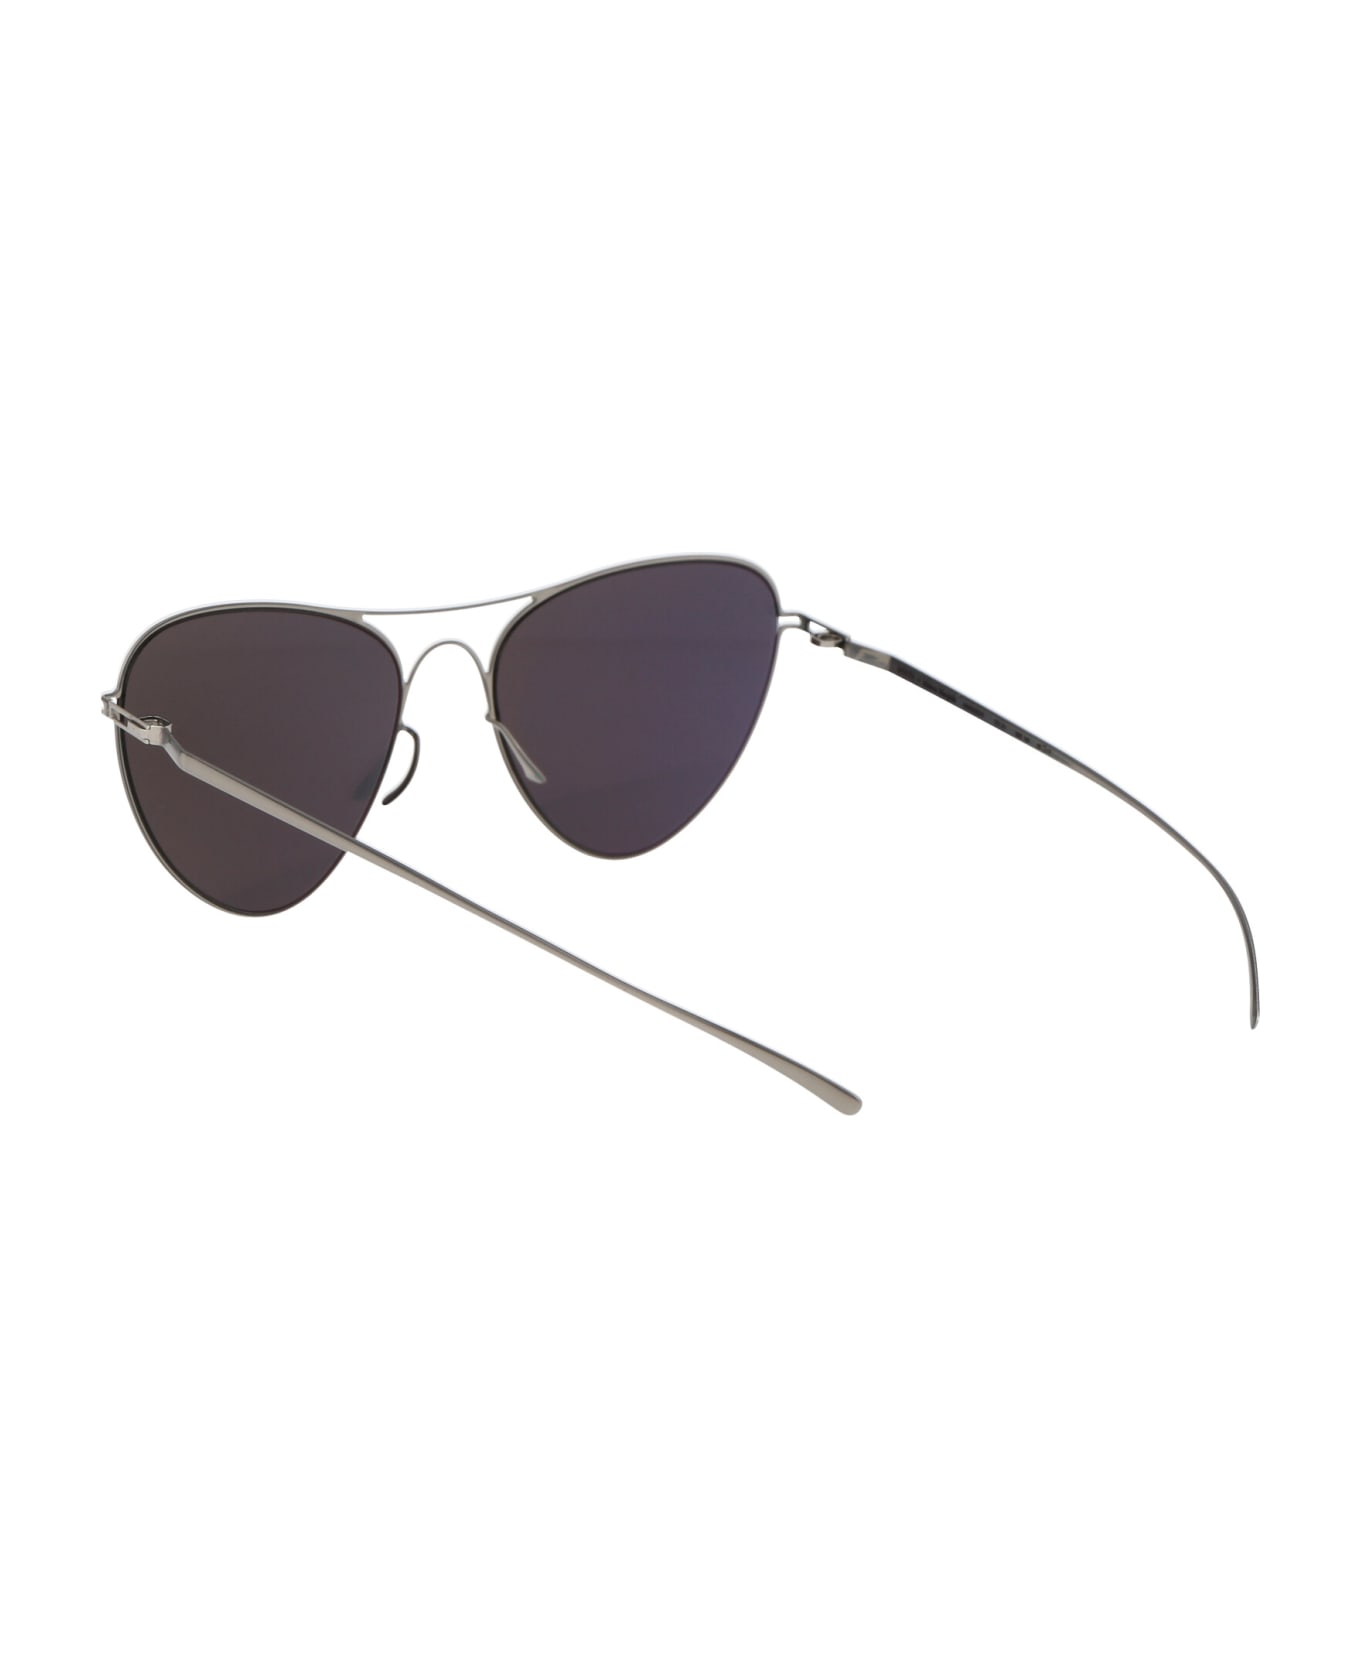 Mykita Mmesse015 Sunglasses - 187 E1 Silver Silver Flash